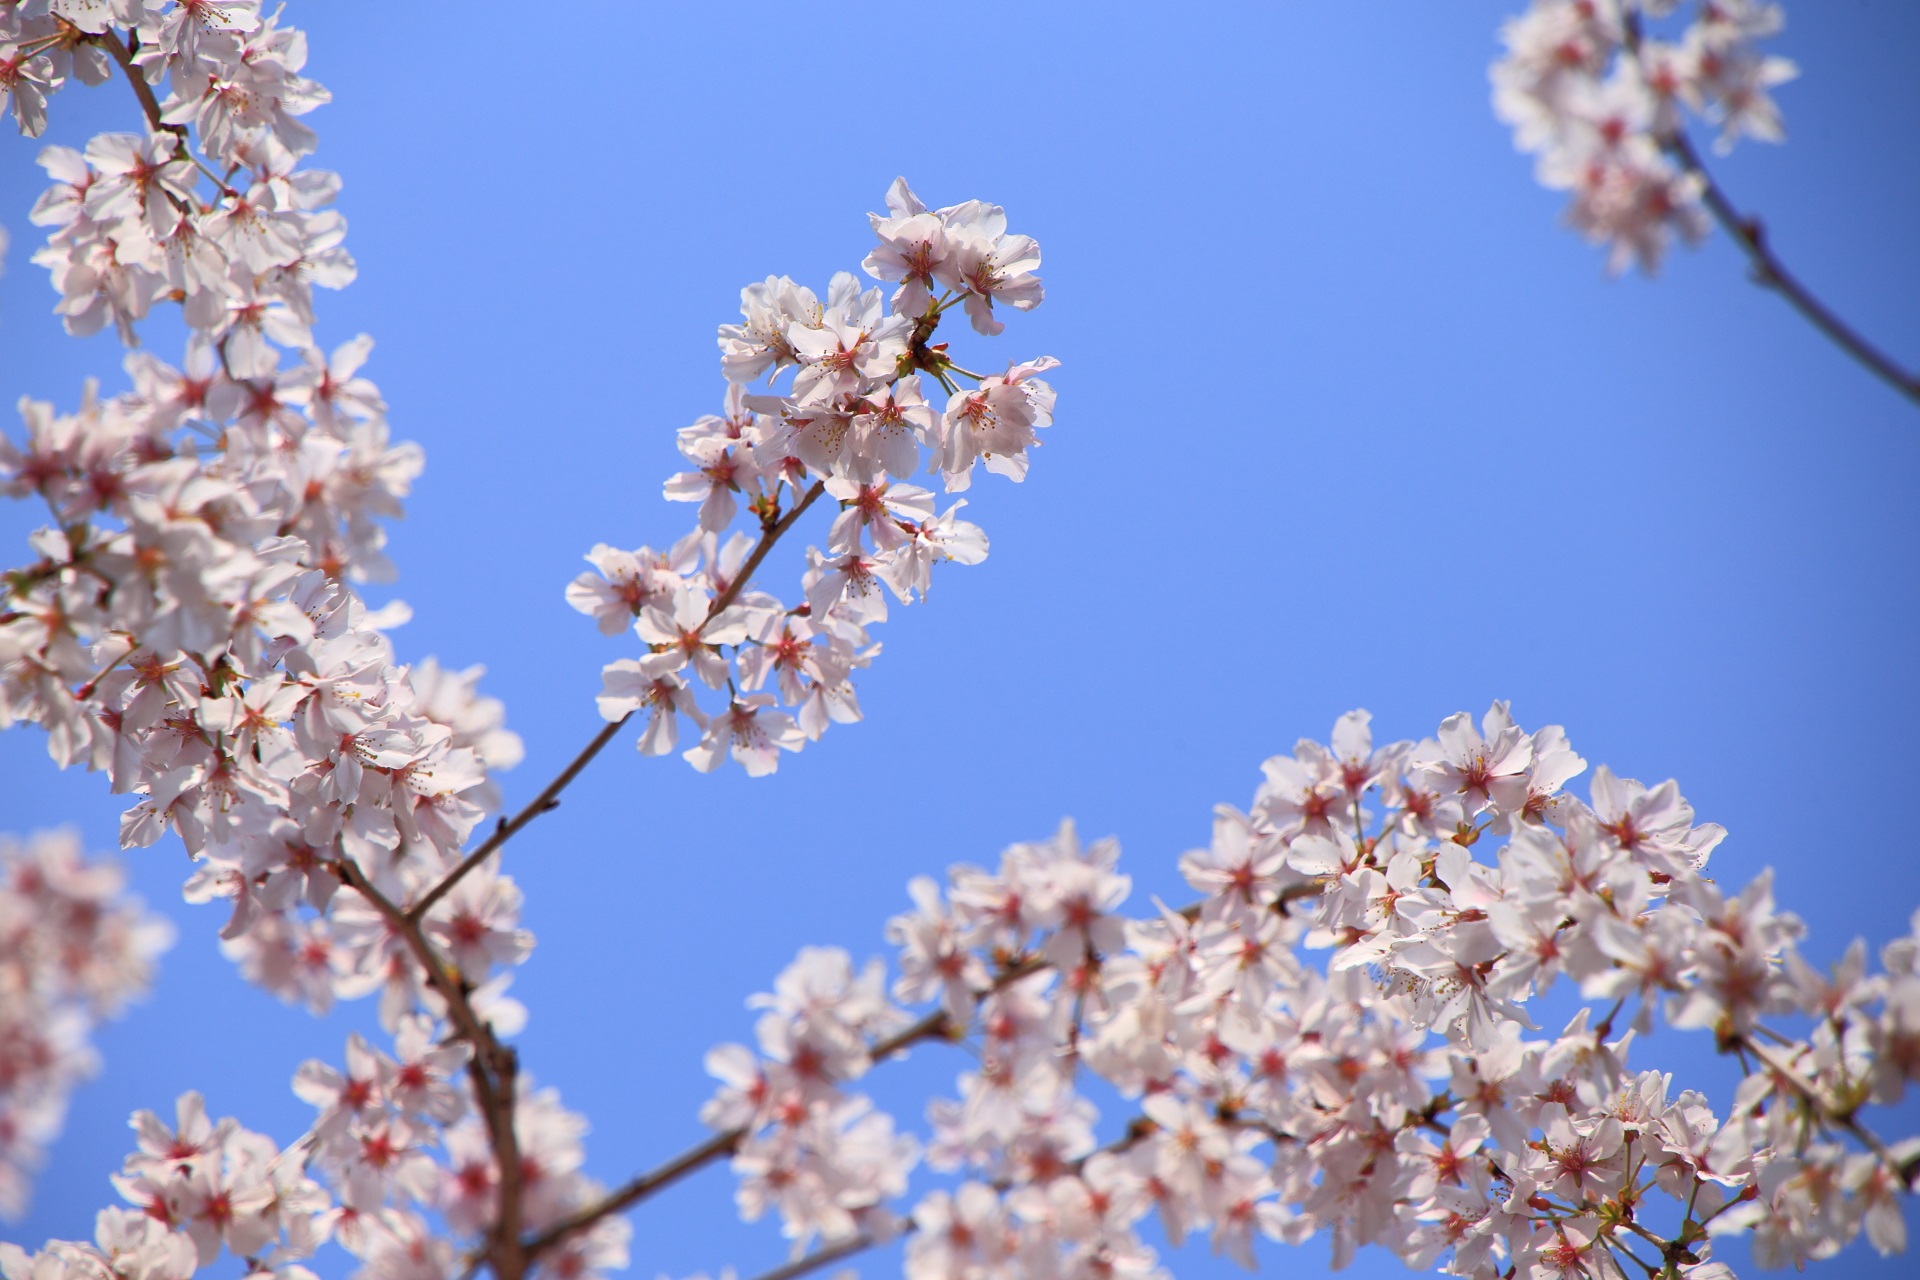 六角堂の透けるような桜の花びら